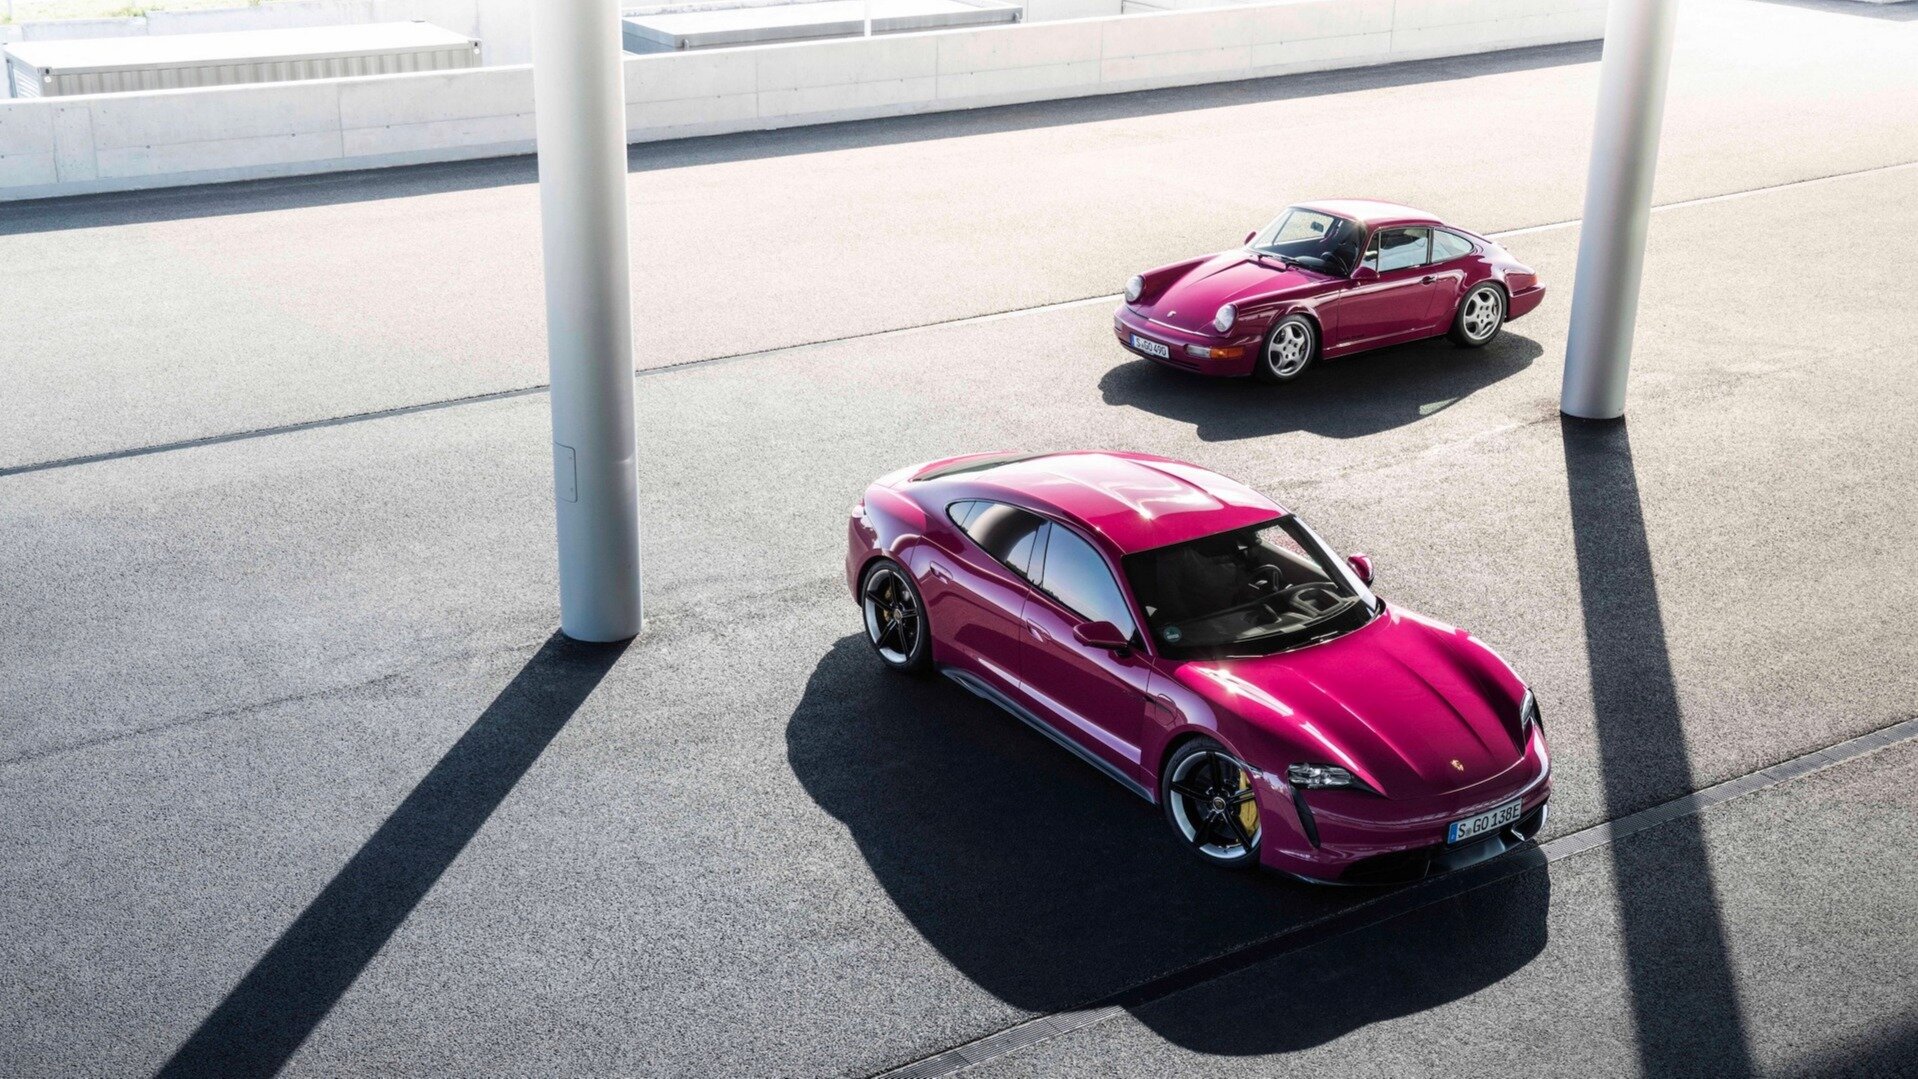 Самопарковка, дальнобойность и новые цвета: электрокар Porsche Taycan обновился